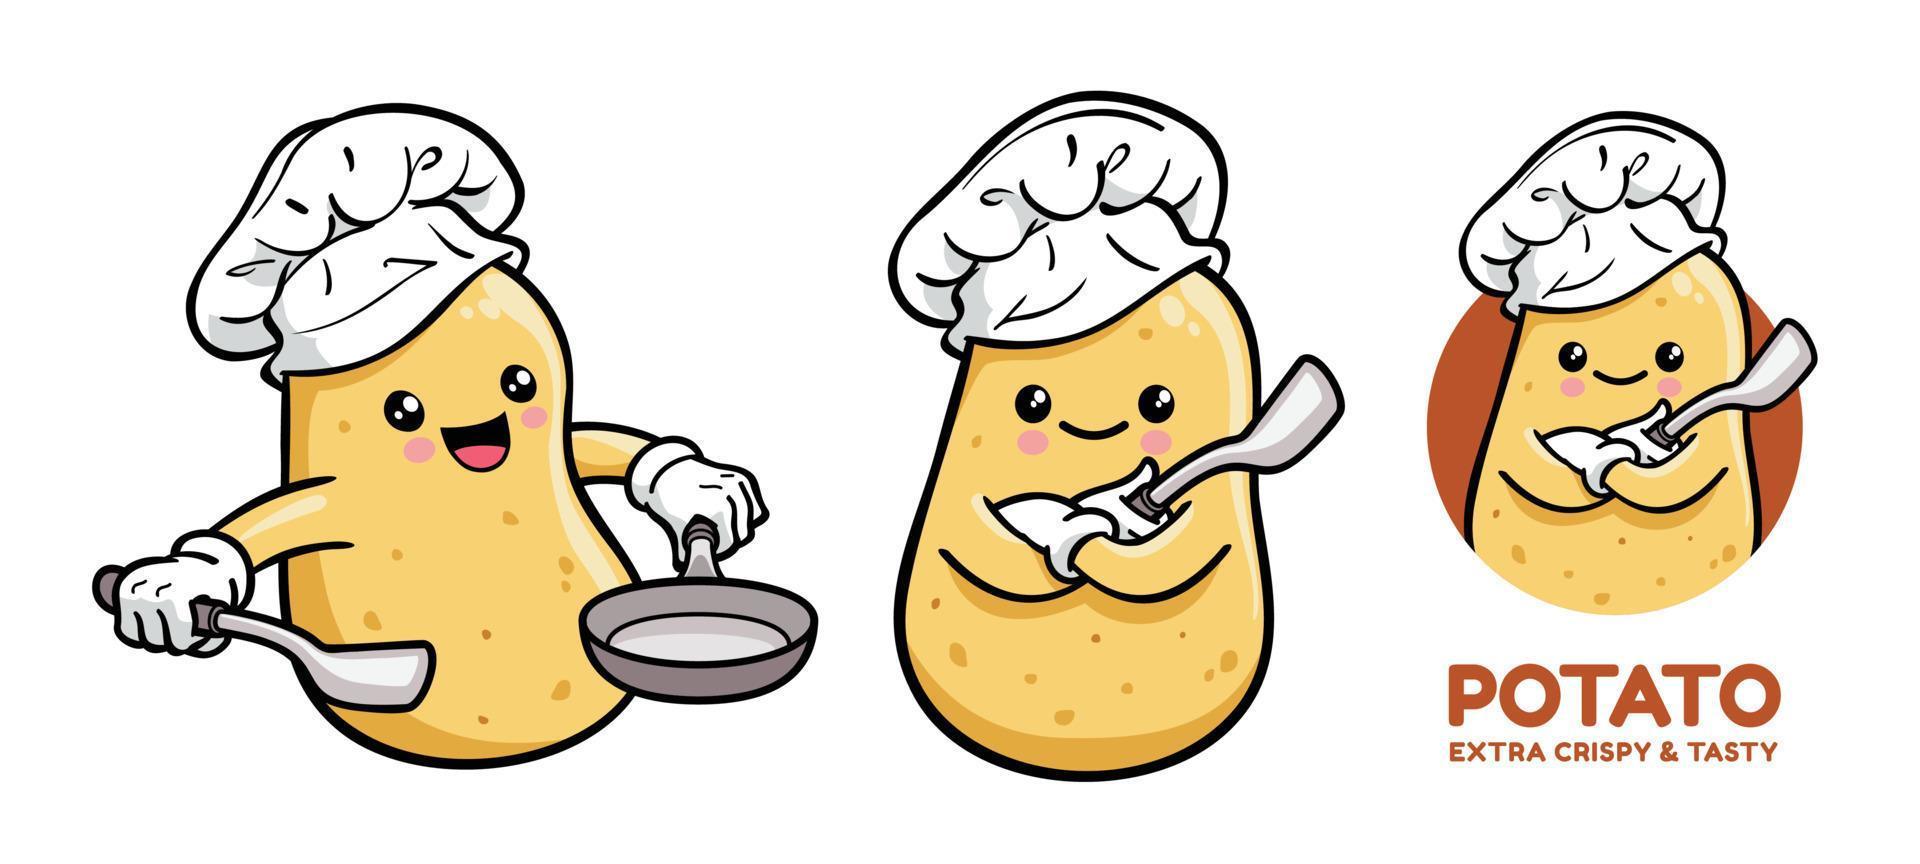 personnage de dessin animé mignon chef de pommes de terre vecteur